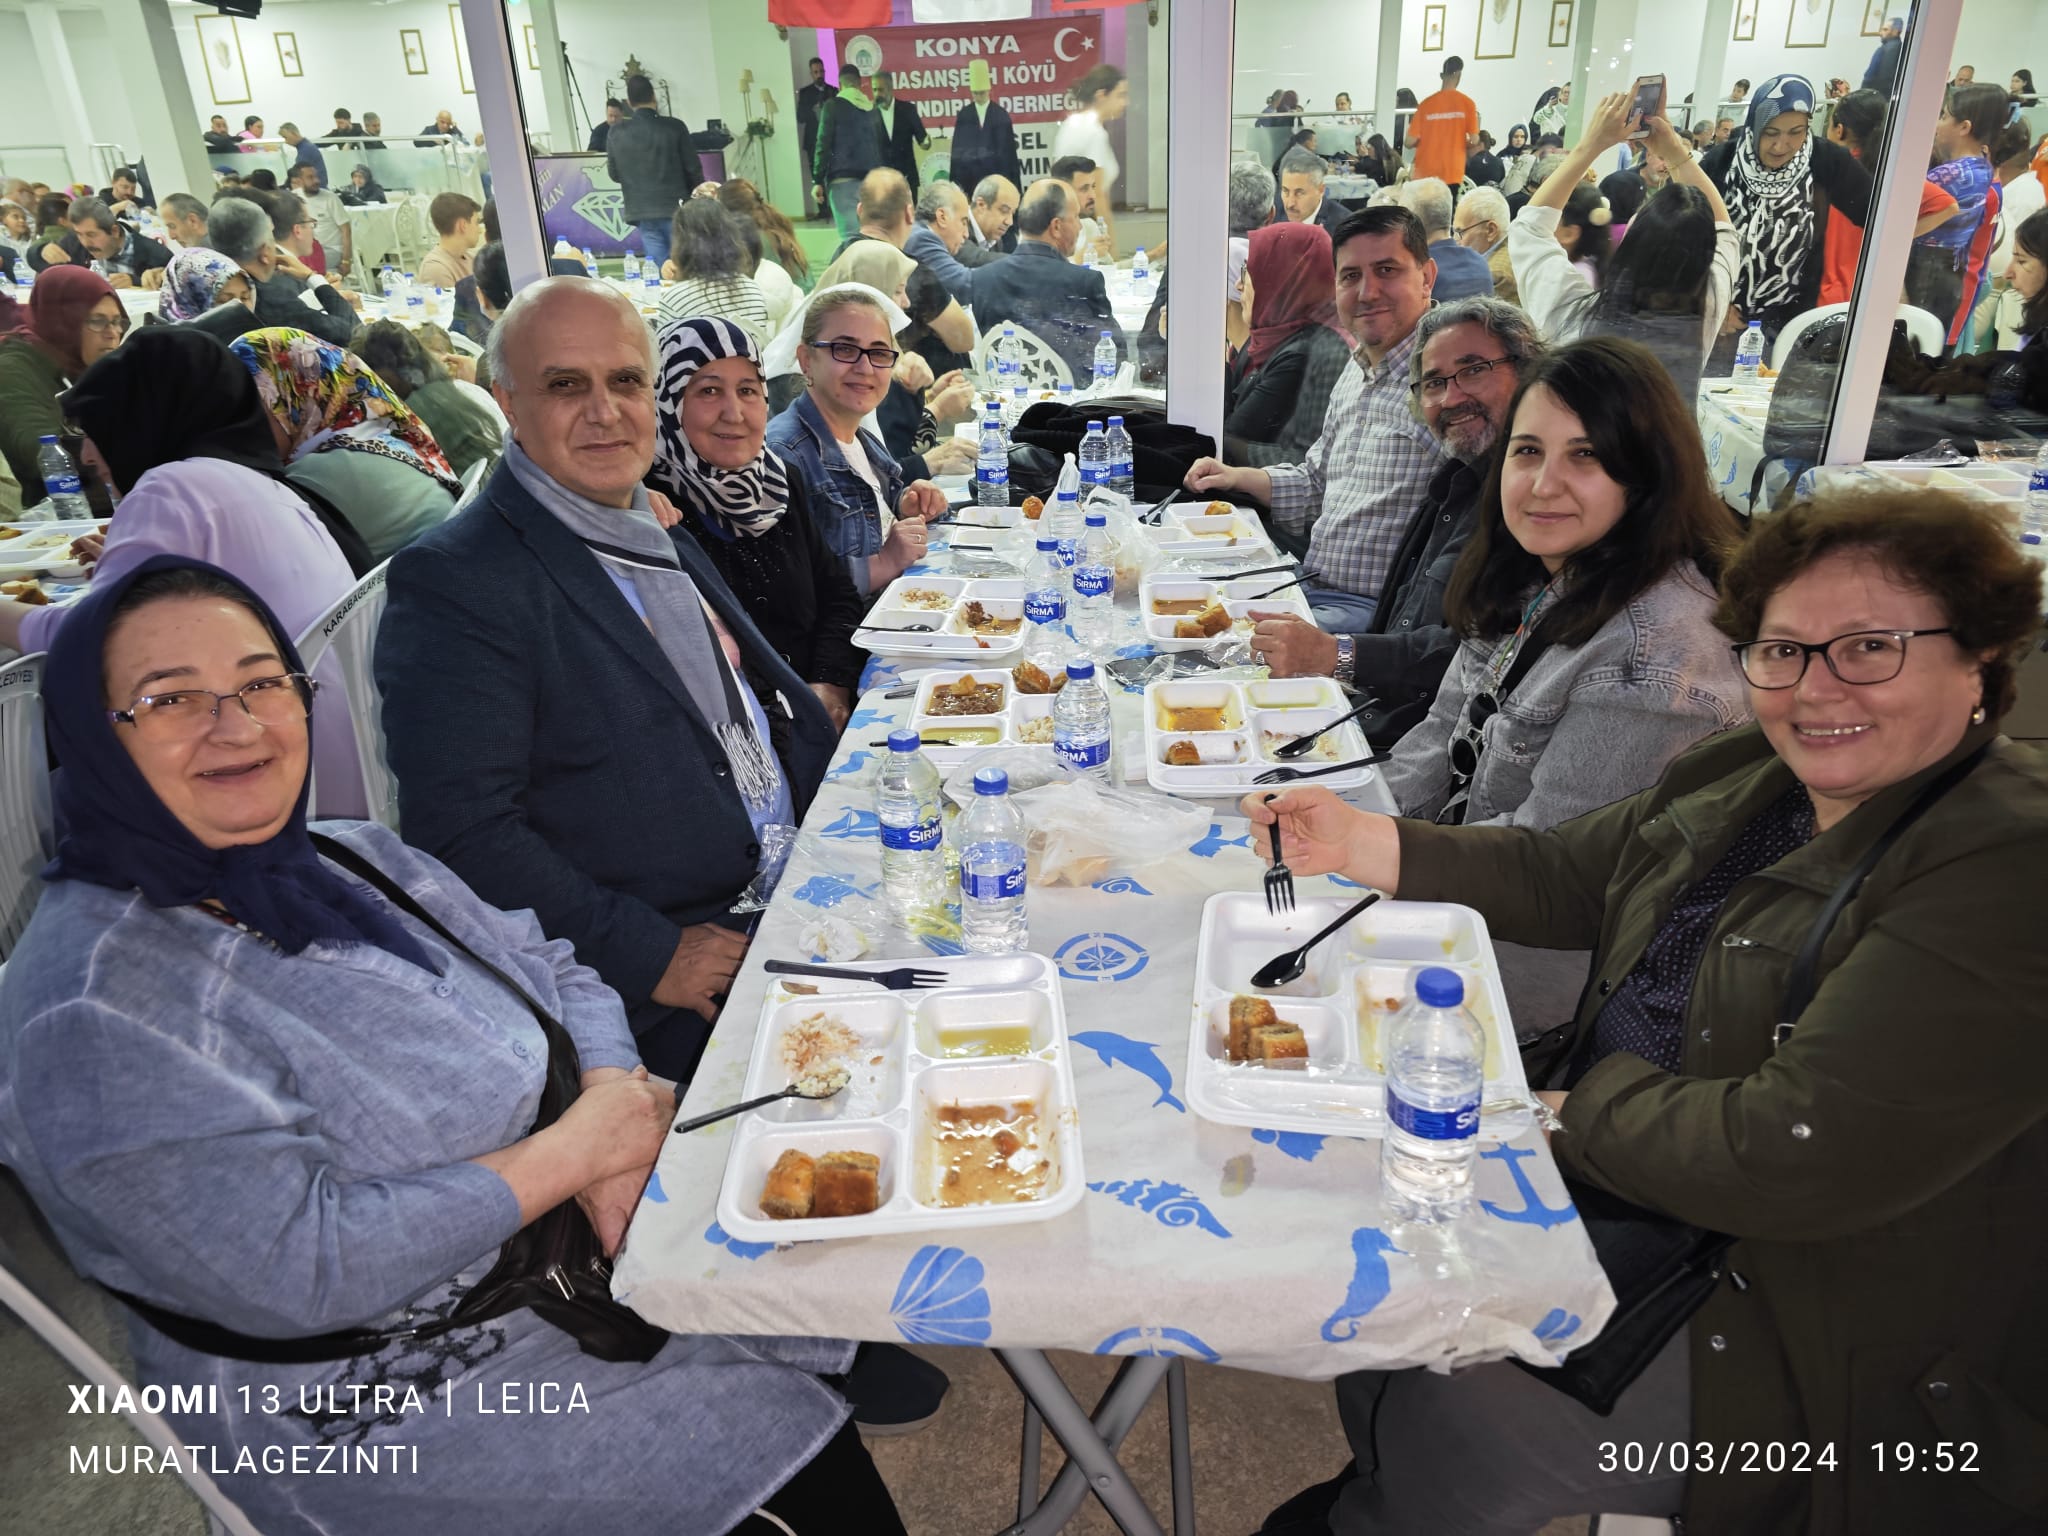 İzmir'deki Konyalı dernekler iftar programında buluştular